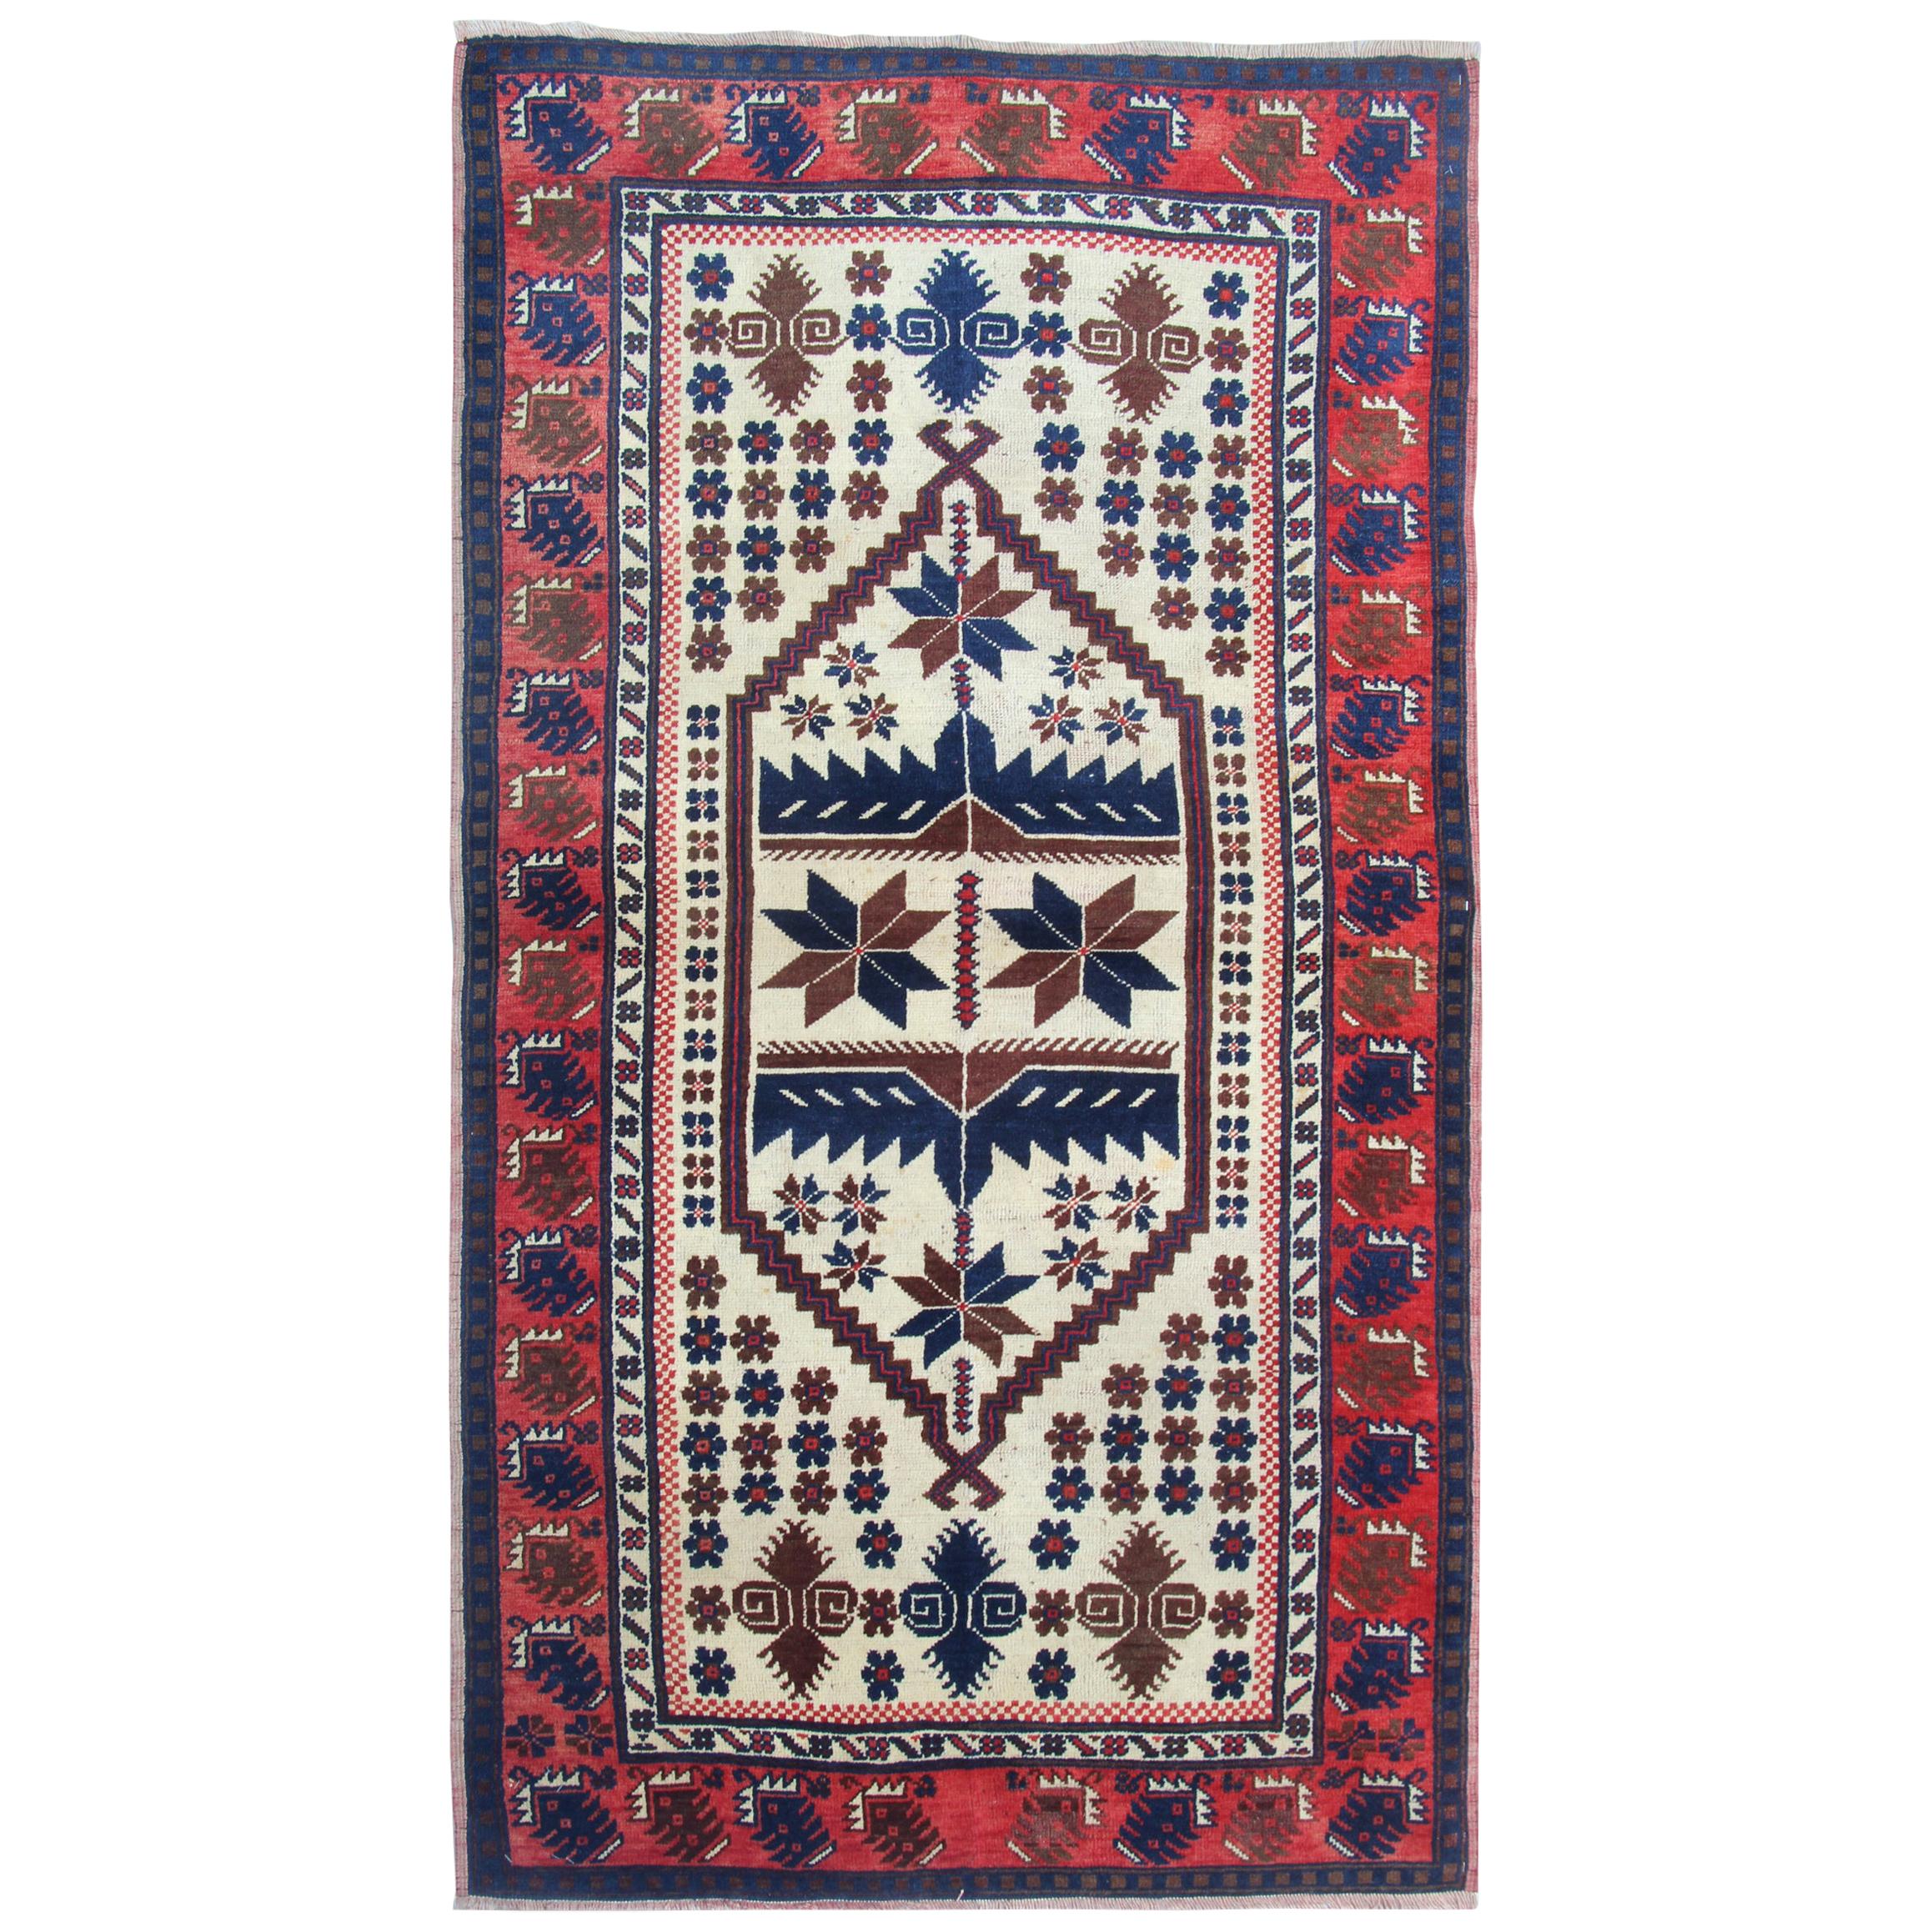 Handmade Carpets Vintage Rugs, Geometric Oriental Red Beige Area Rug